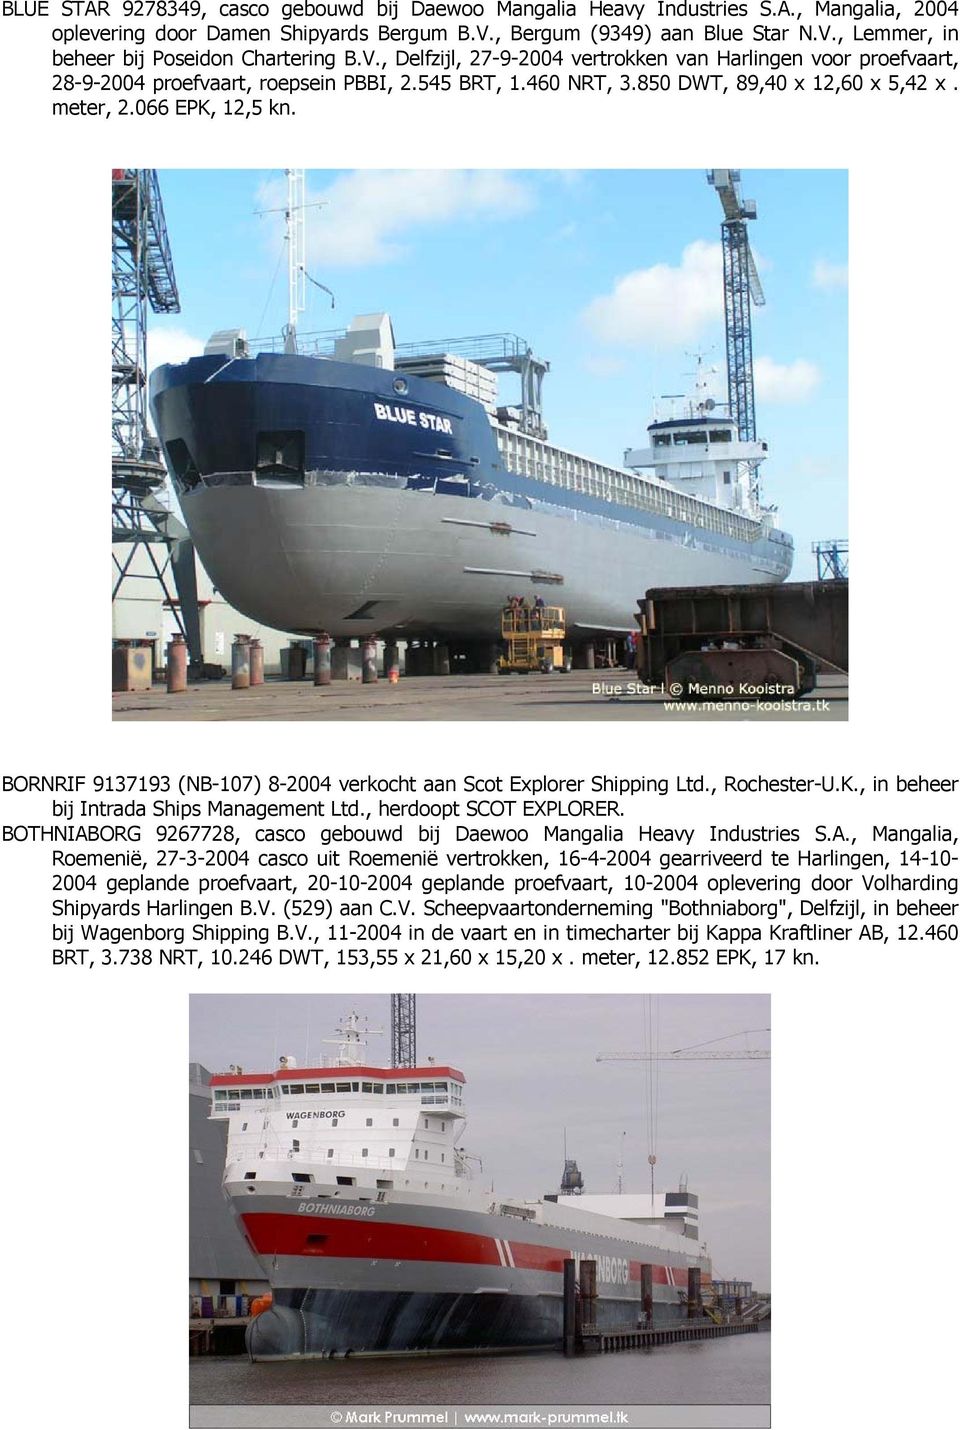 BORNRIF 9137193 (NB-107) 8-2004 verkocht aan Scot Explorer Shipping Ltd., Rochester-U.K., in beheer bij Intrada Ships Management Ltd., herdoopt SCOT EXPLORER.